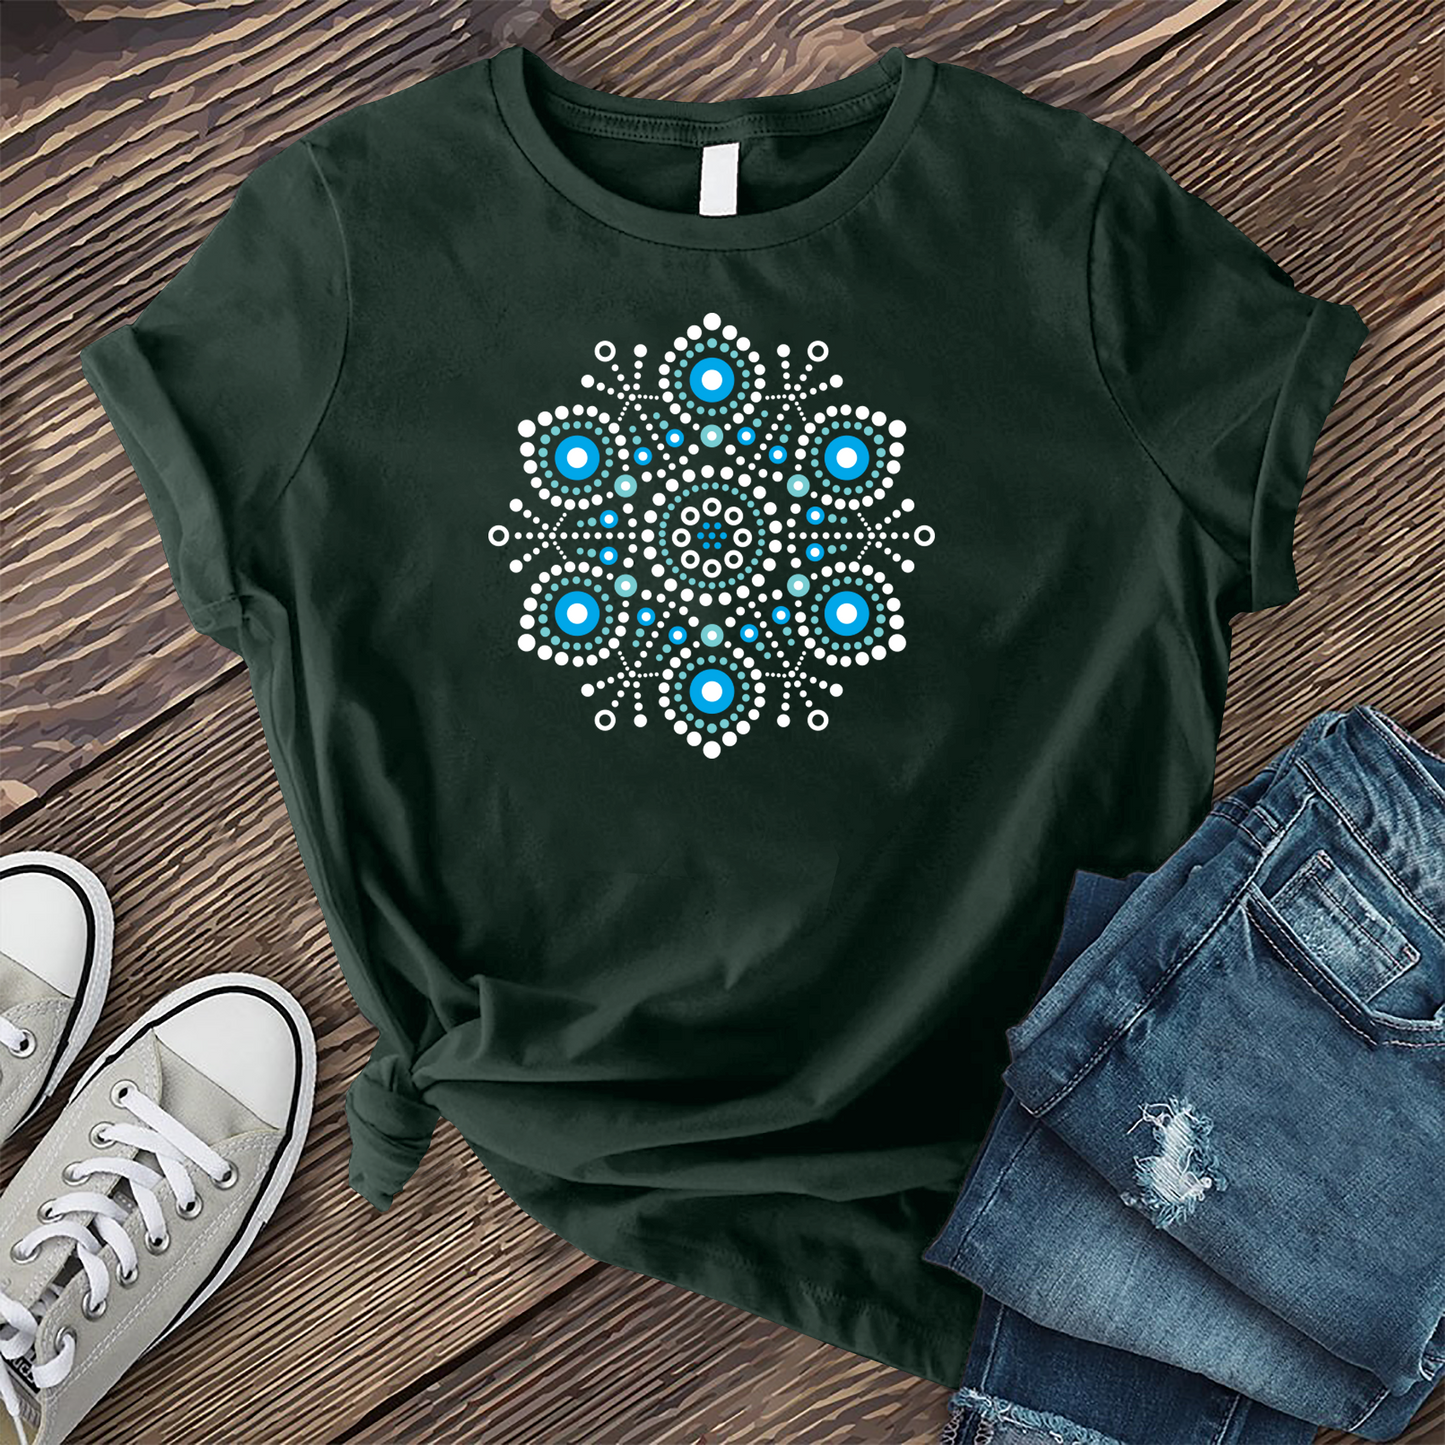 Abstract Snowflake T-shirt